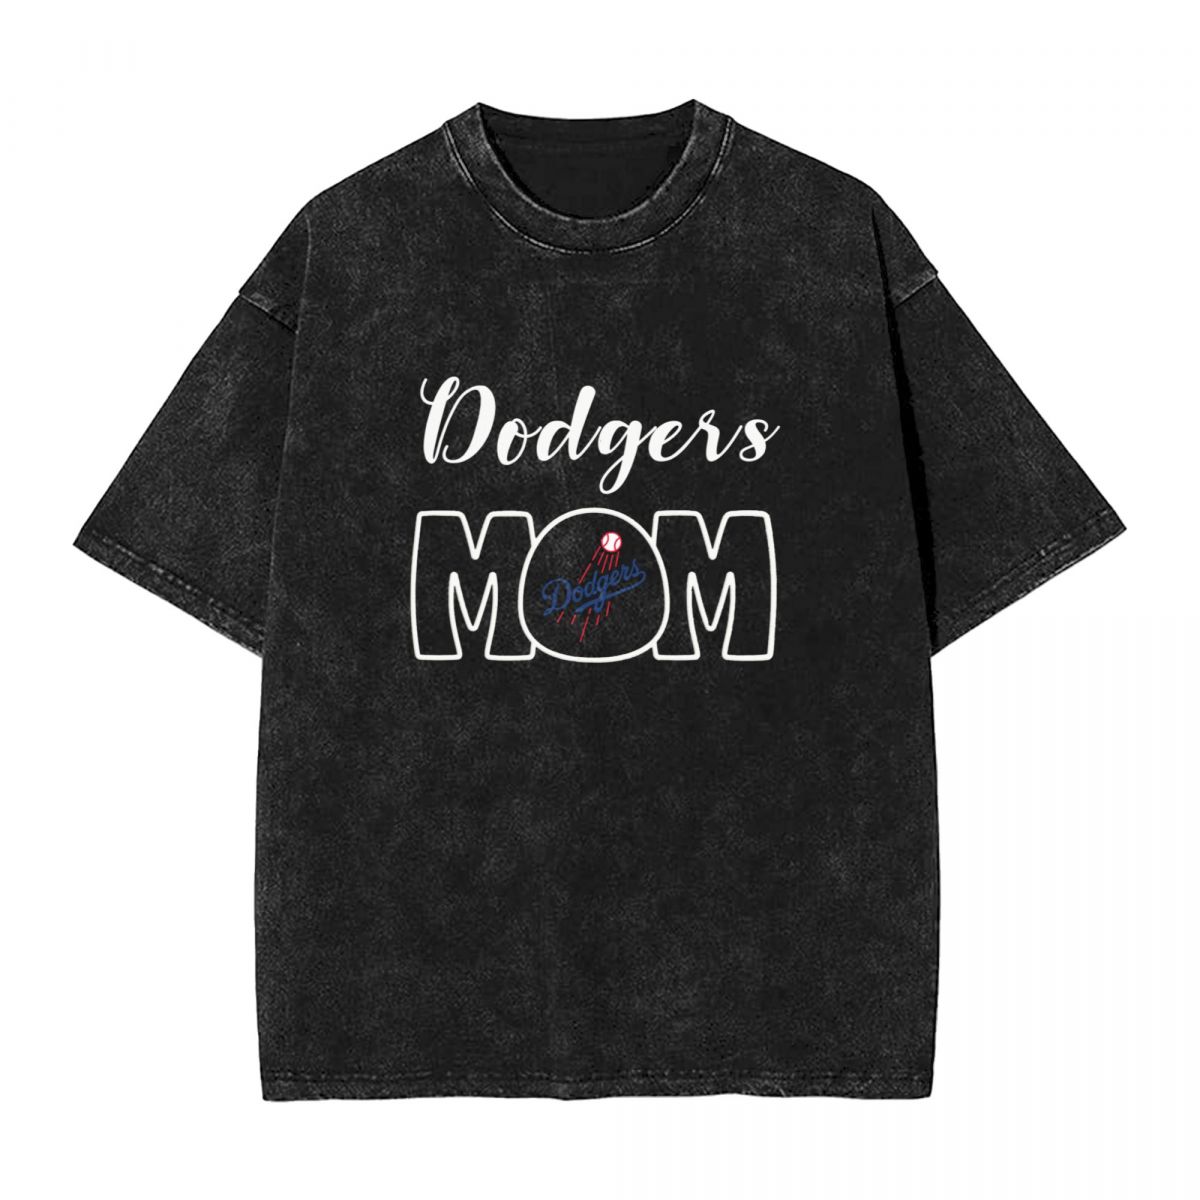 Los Angeles Dodgers Mom Washed Oversized Vintage Men's T-Shirt